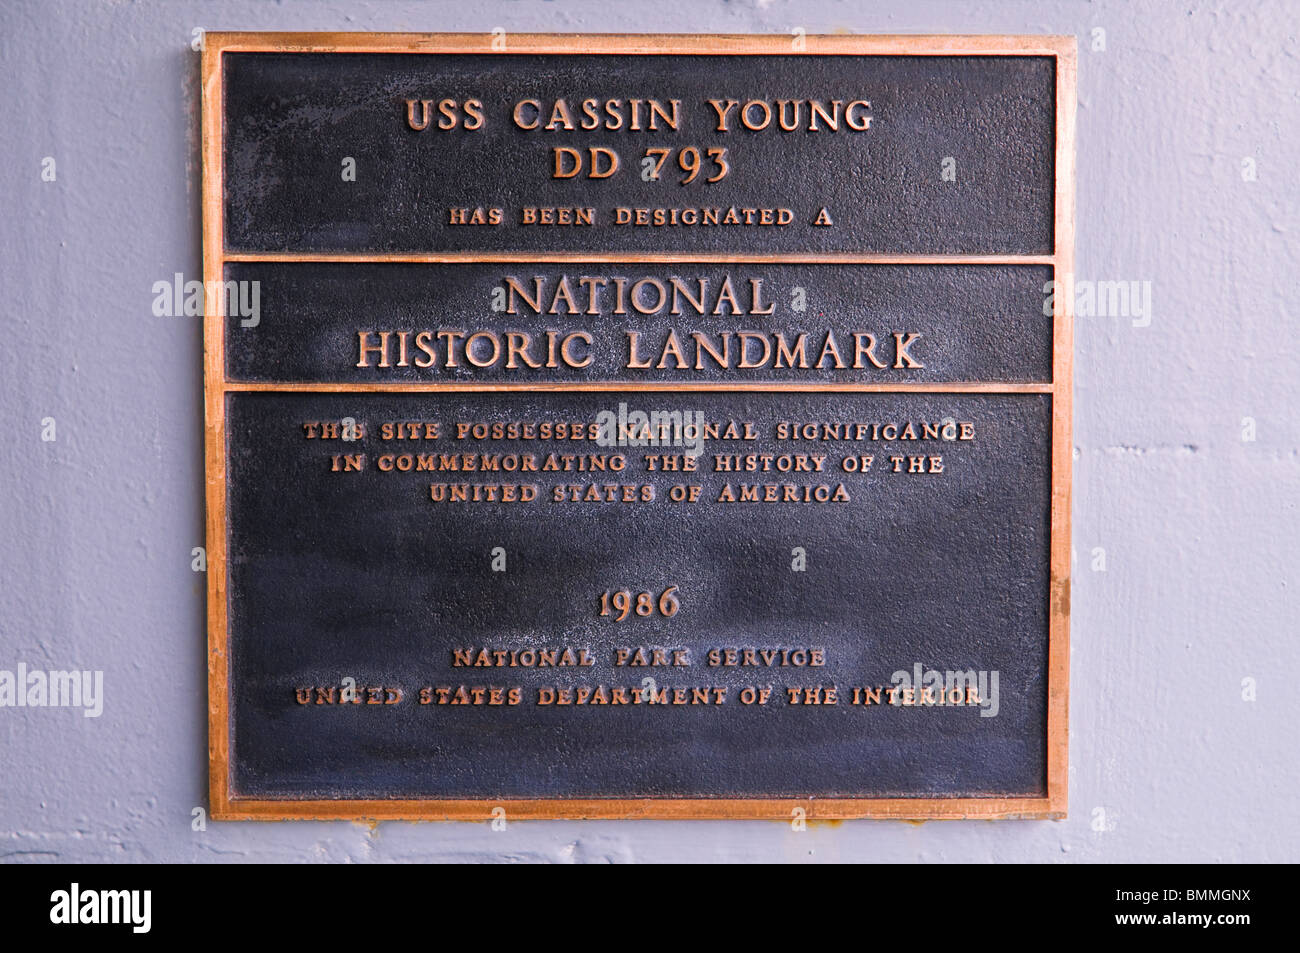 Plaque sur l'USS Cassin Young (Monument historique), Charlestown Navy Yard, Boston, Massachusetts Banque D'Images